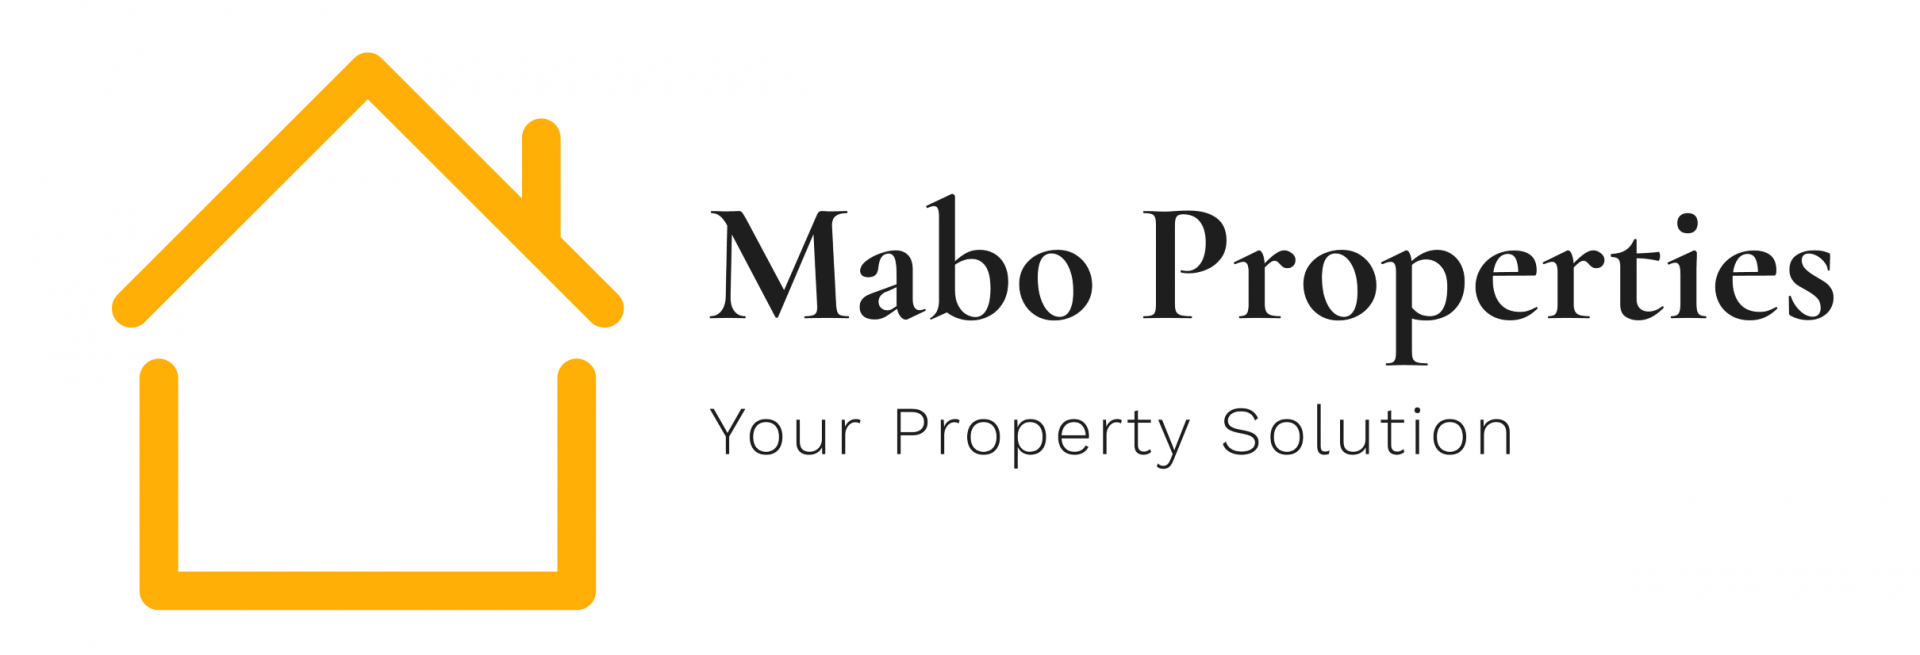 MABO Buys Properties logo